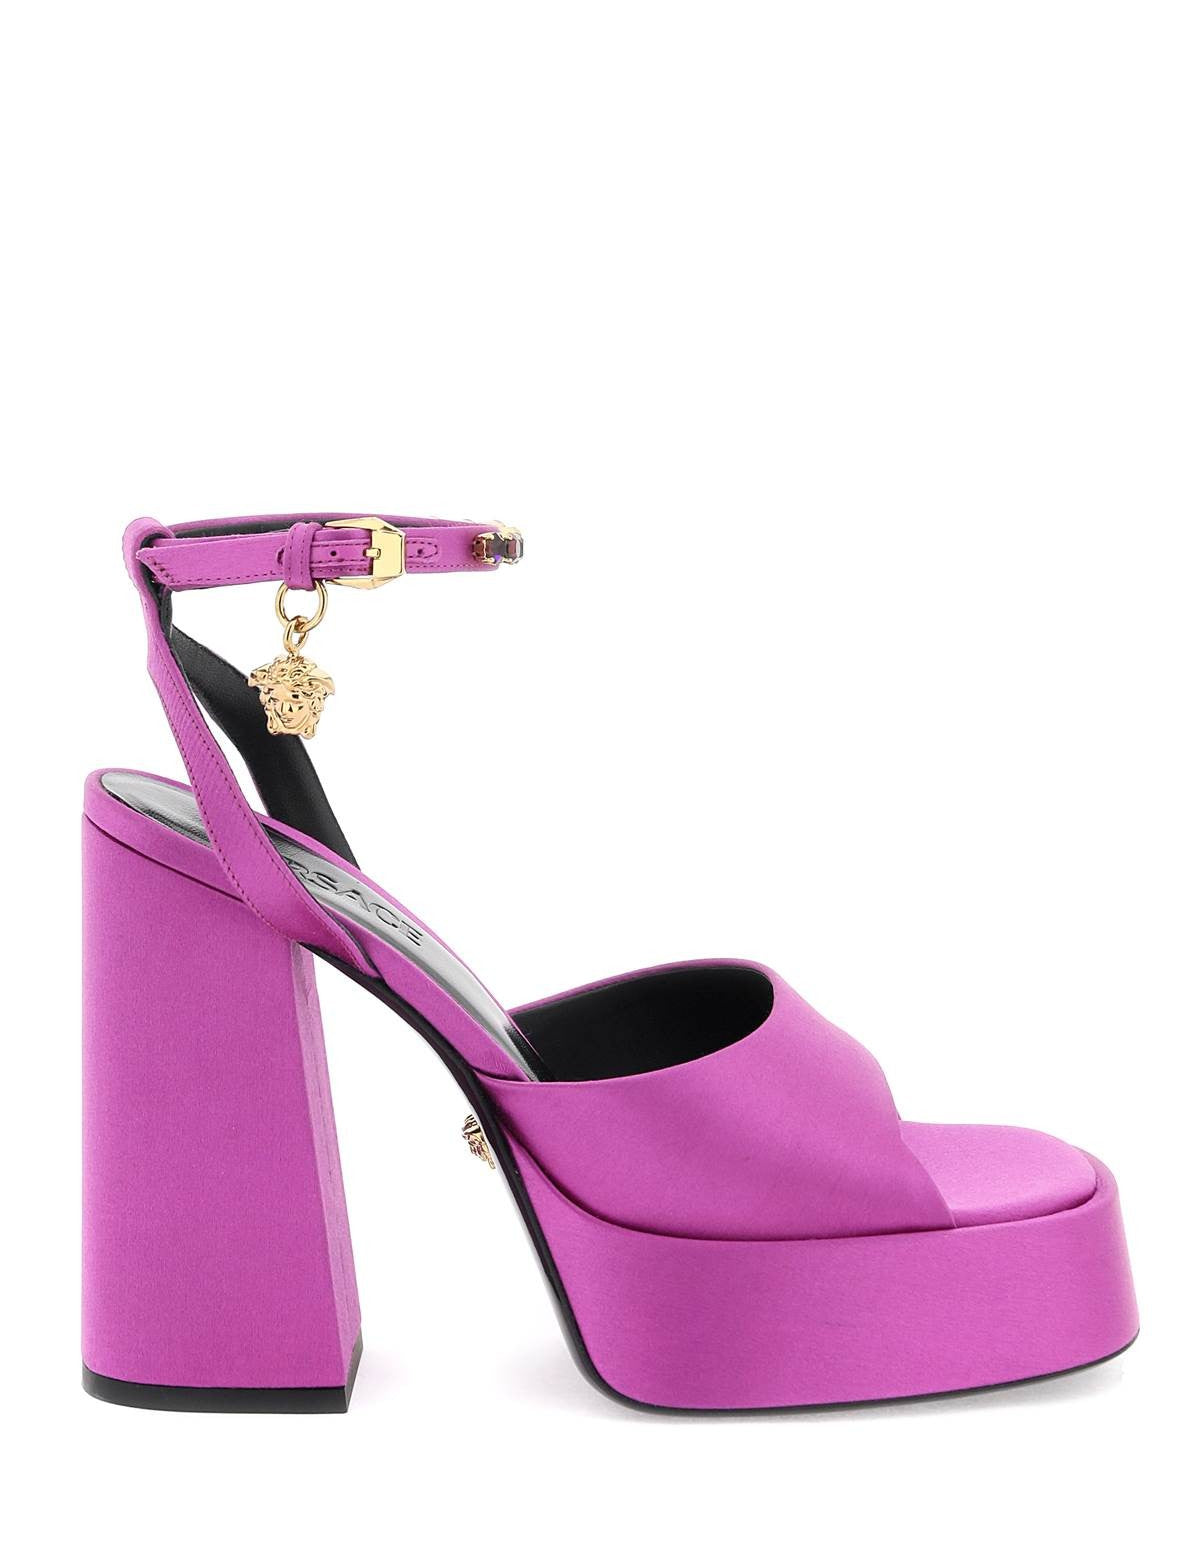 versace-aevitas-sandals.jpg